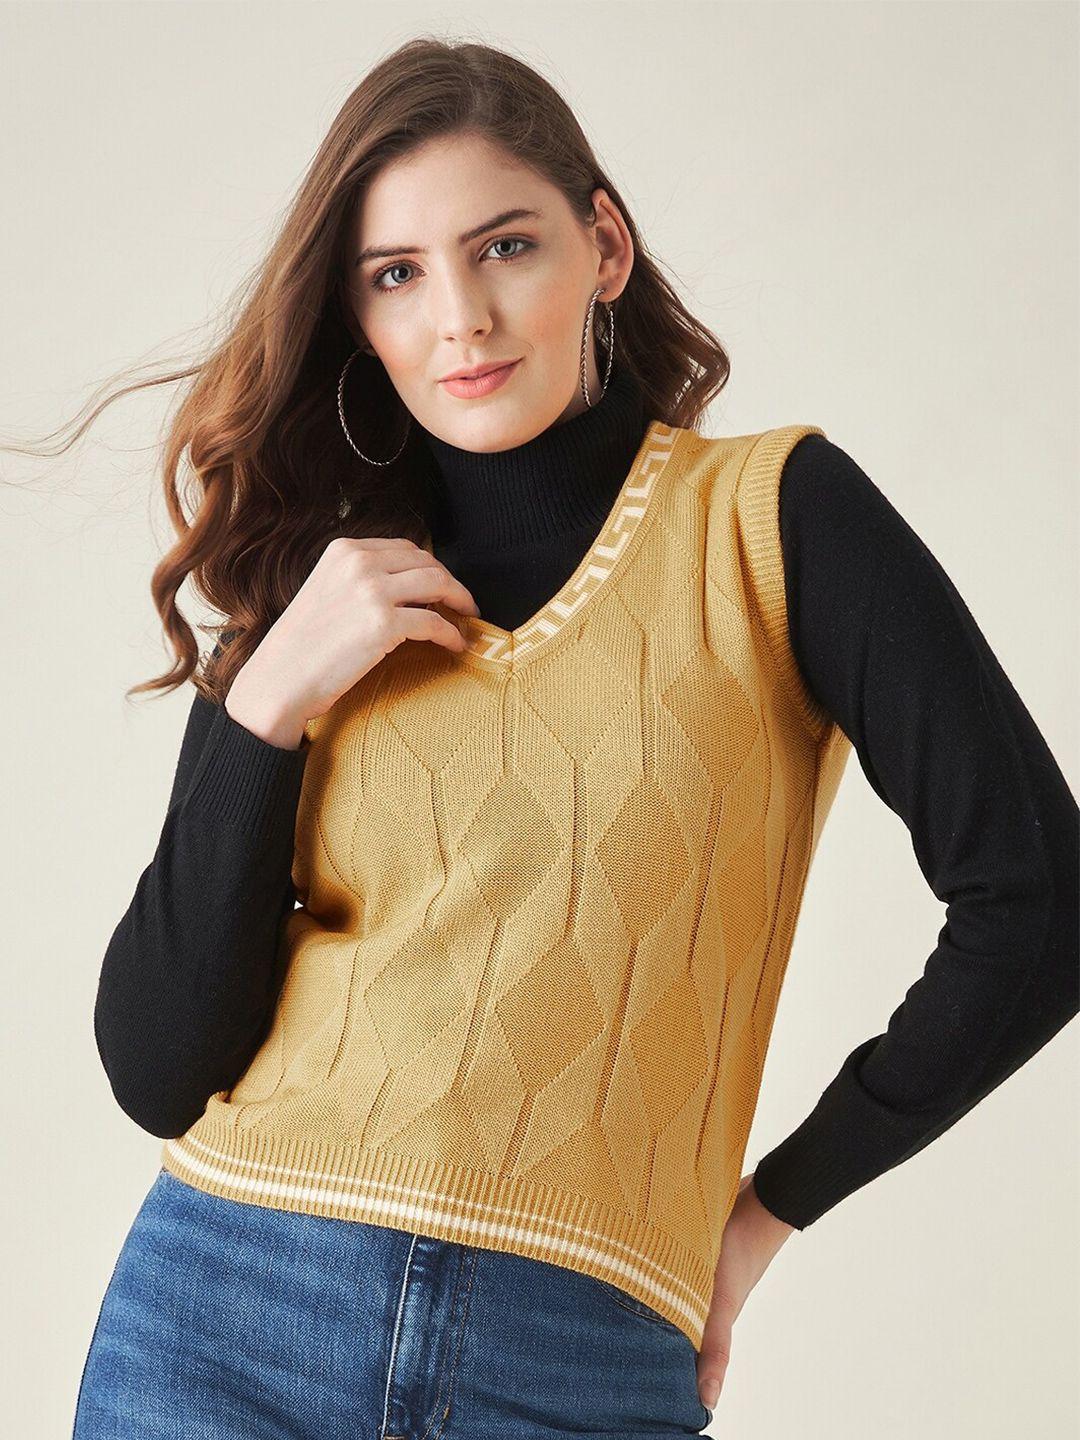 modeve self design geometric sweater vest acrylic sweaters